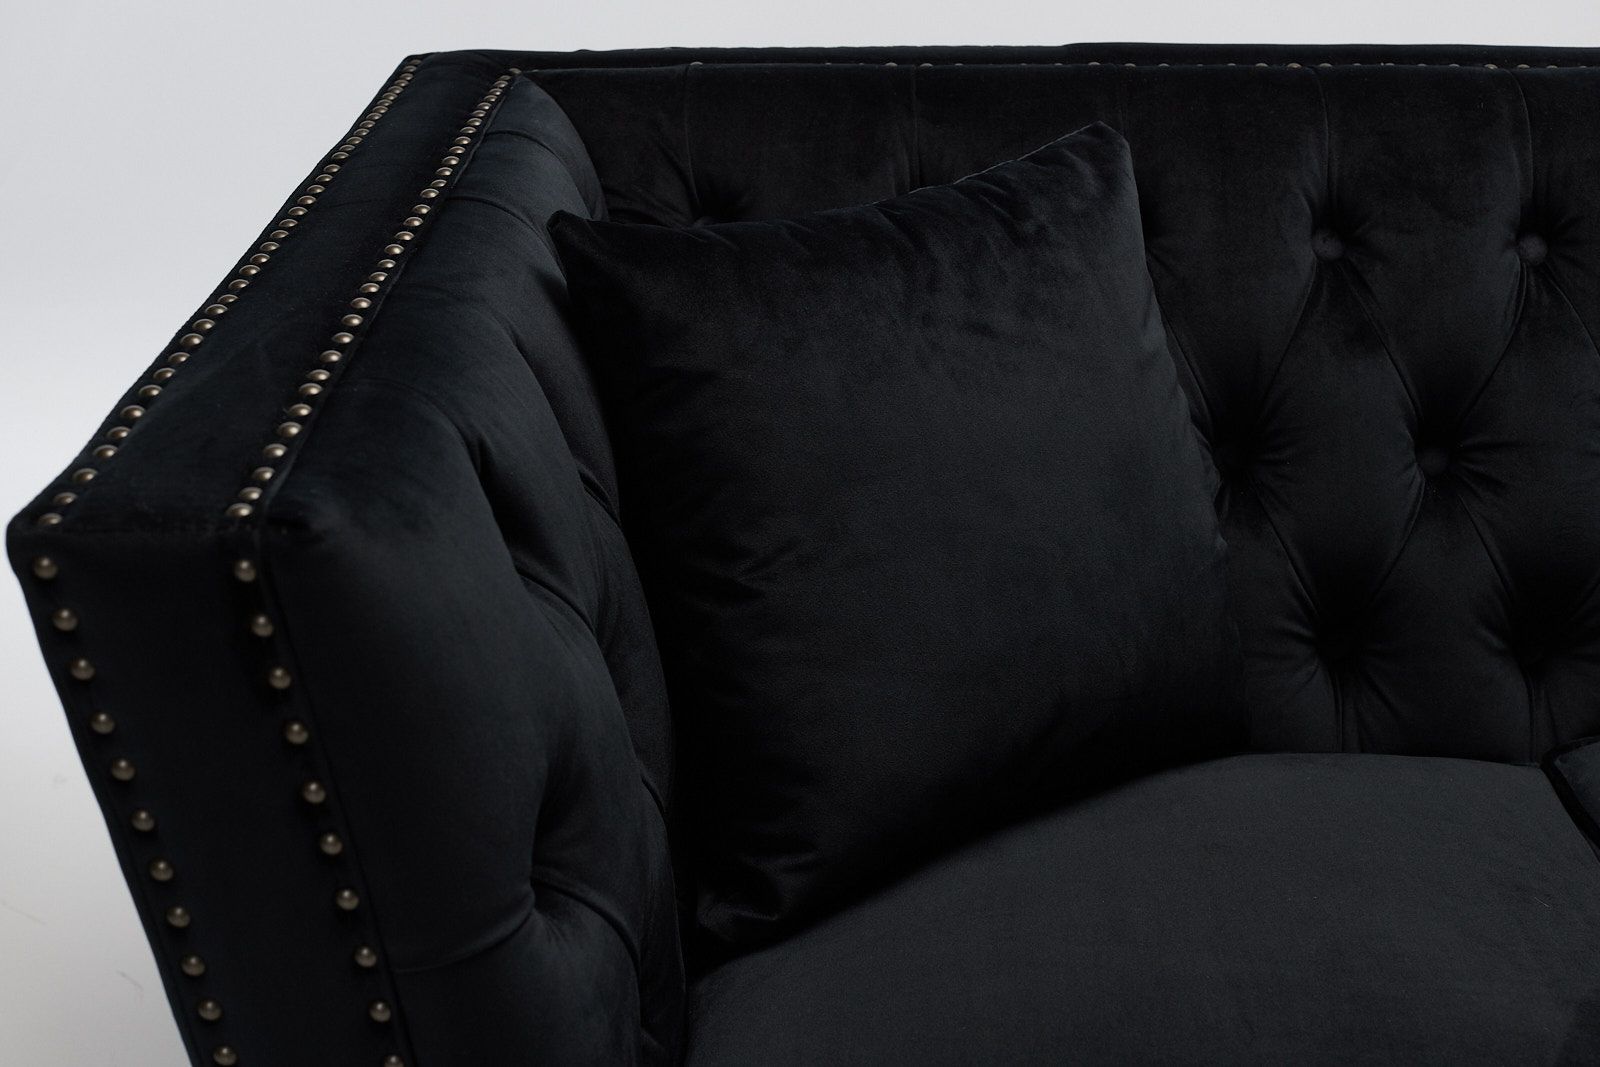 Chloe – 2 Seater Modern Chesterfield Sofa, Black Velvet | Furniture Outlet Within Black Velvet 2 Seater Sofa Beds (View 5 of 15)